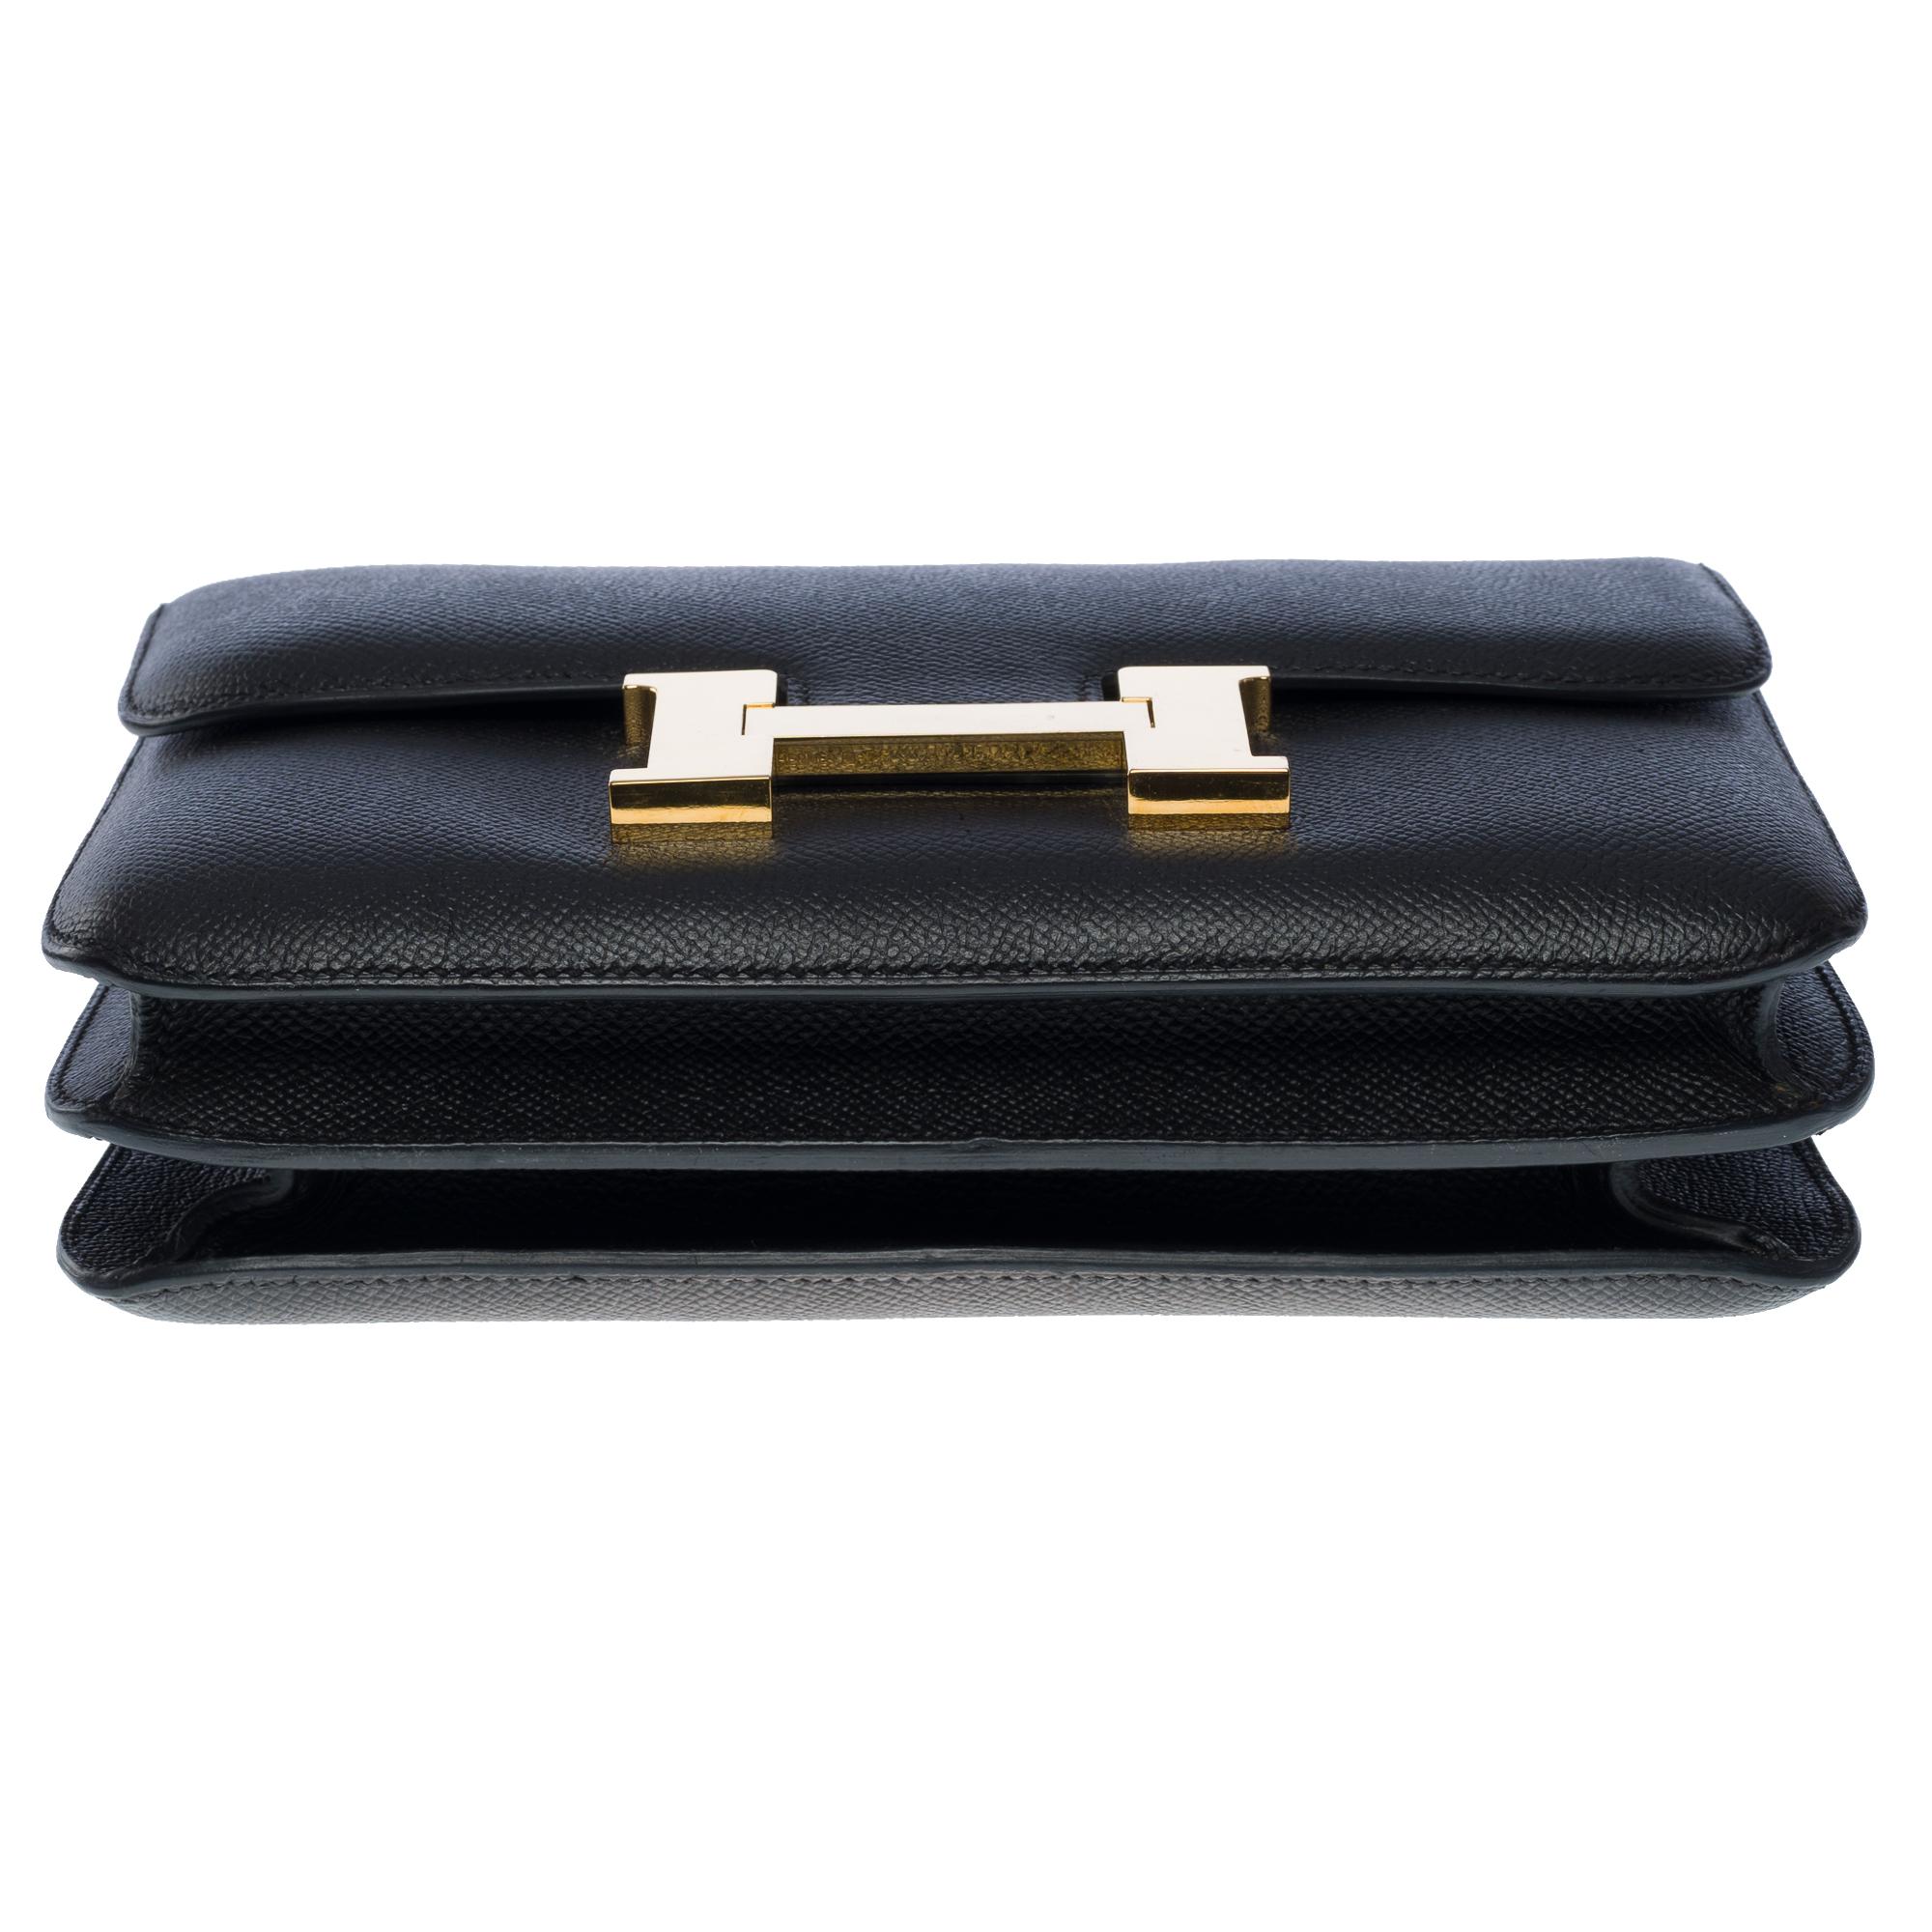 Gorgeous Hermès Constance shoulder bag in black epsom leather , GHW 6